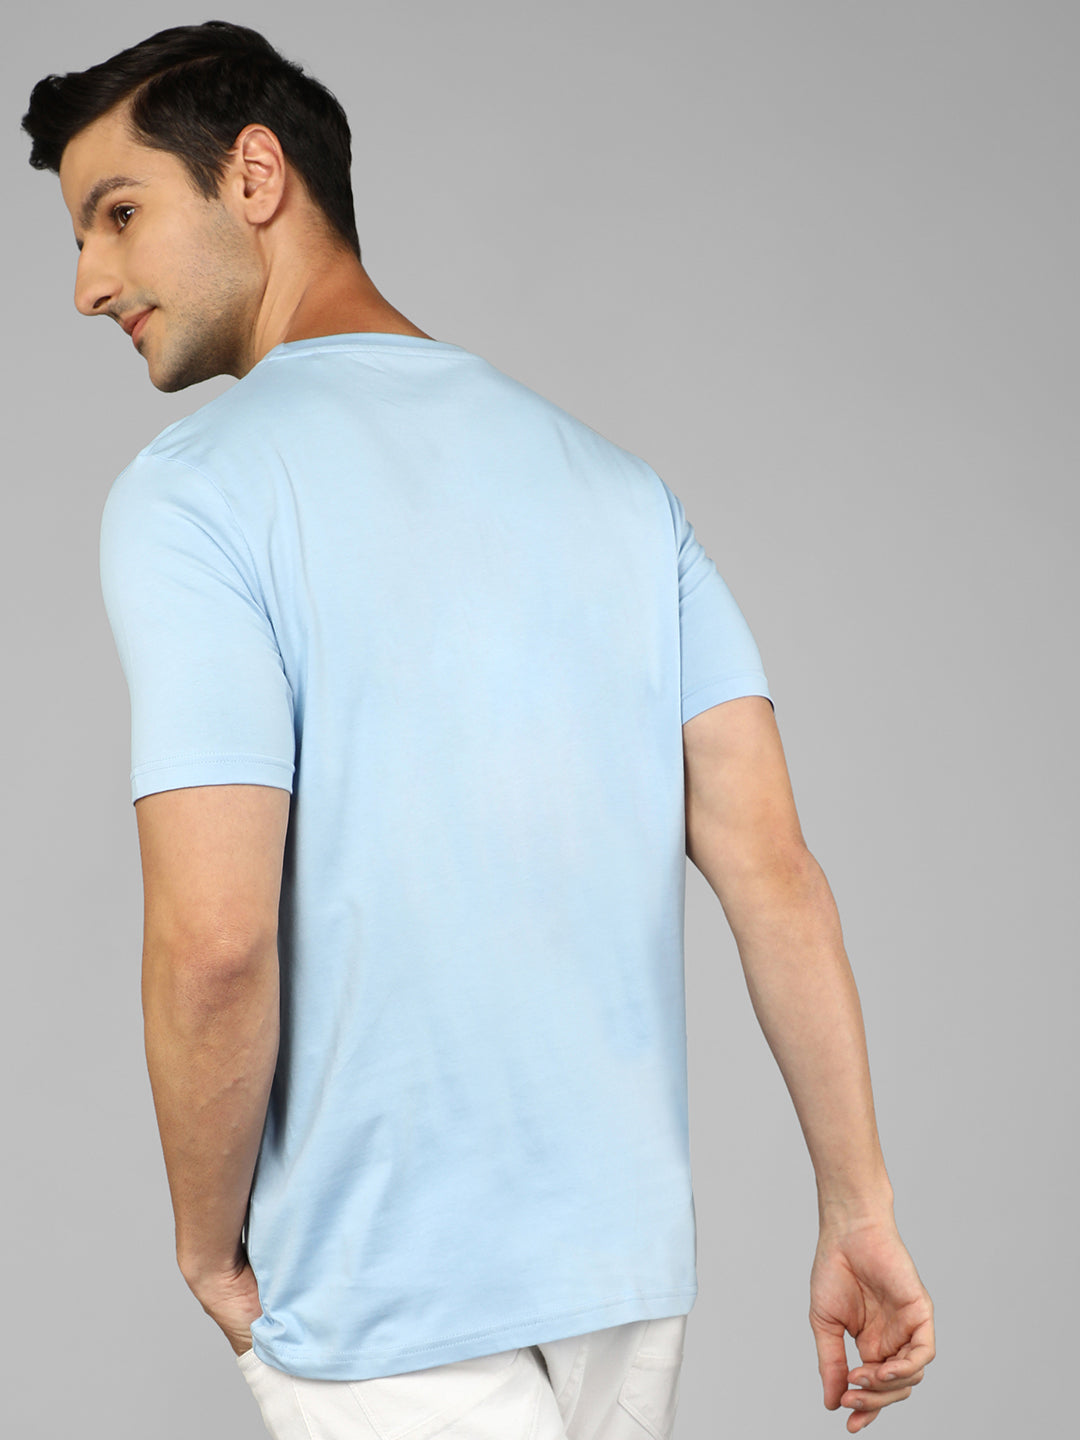 Joe Wick - Solid Men's T-Shirt - Ice Blue